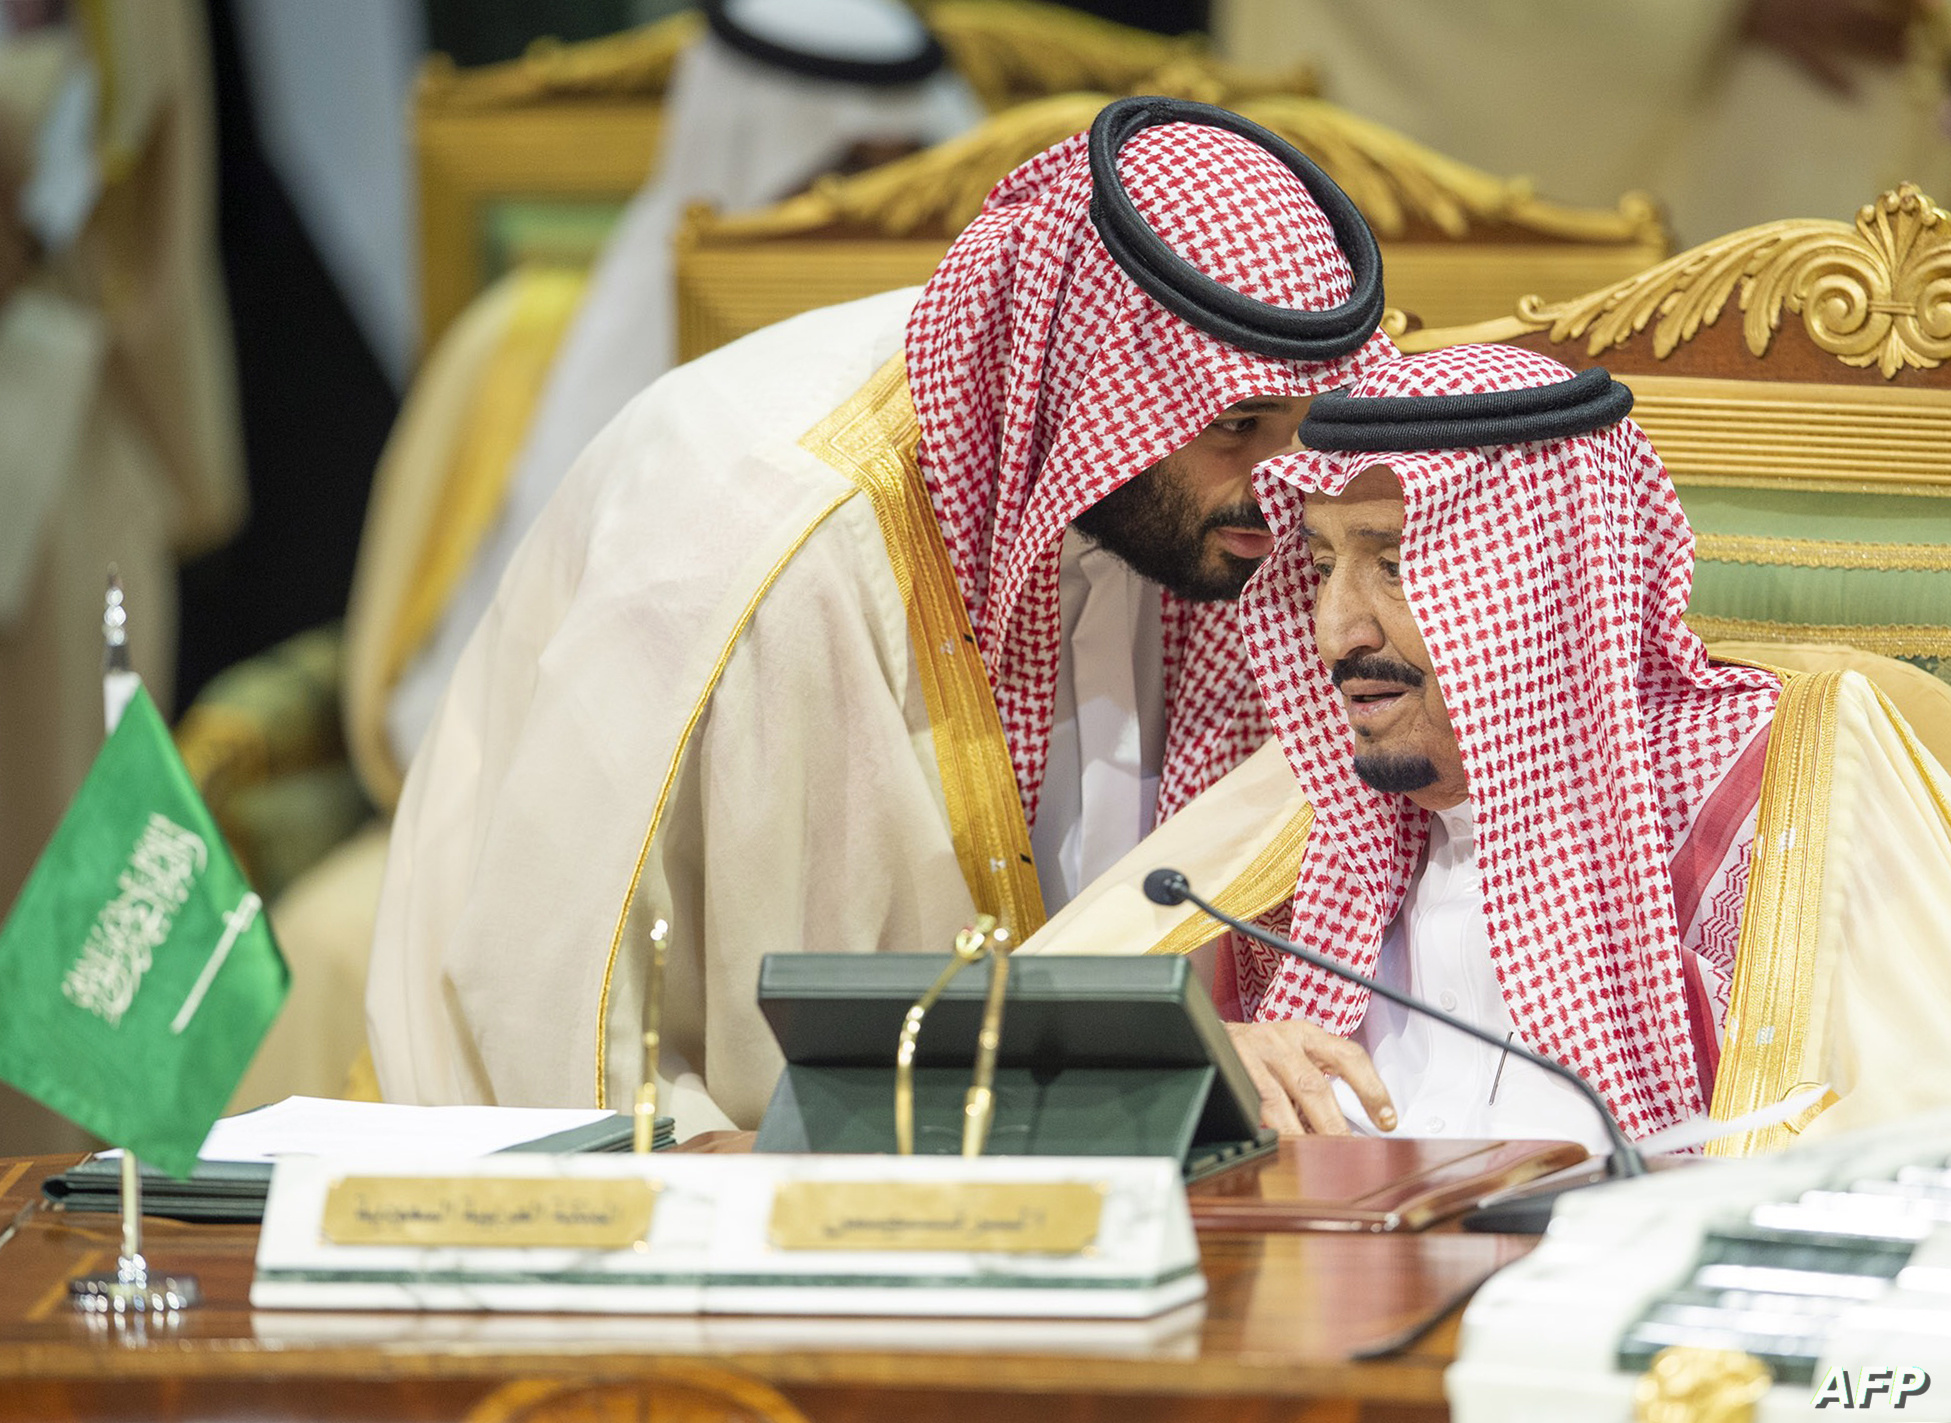 “عاجل السعودية” إعادة تشكيل مجلس الوزراء برئاسة ولي العهد السعودي الأمير محمد بن سلمان